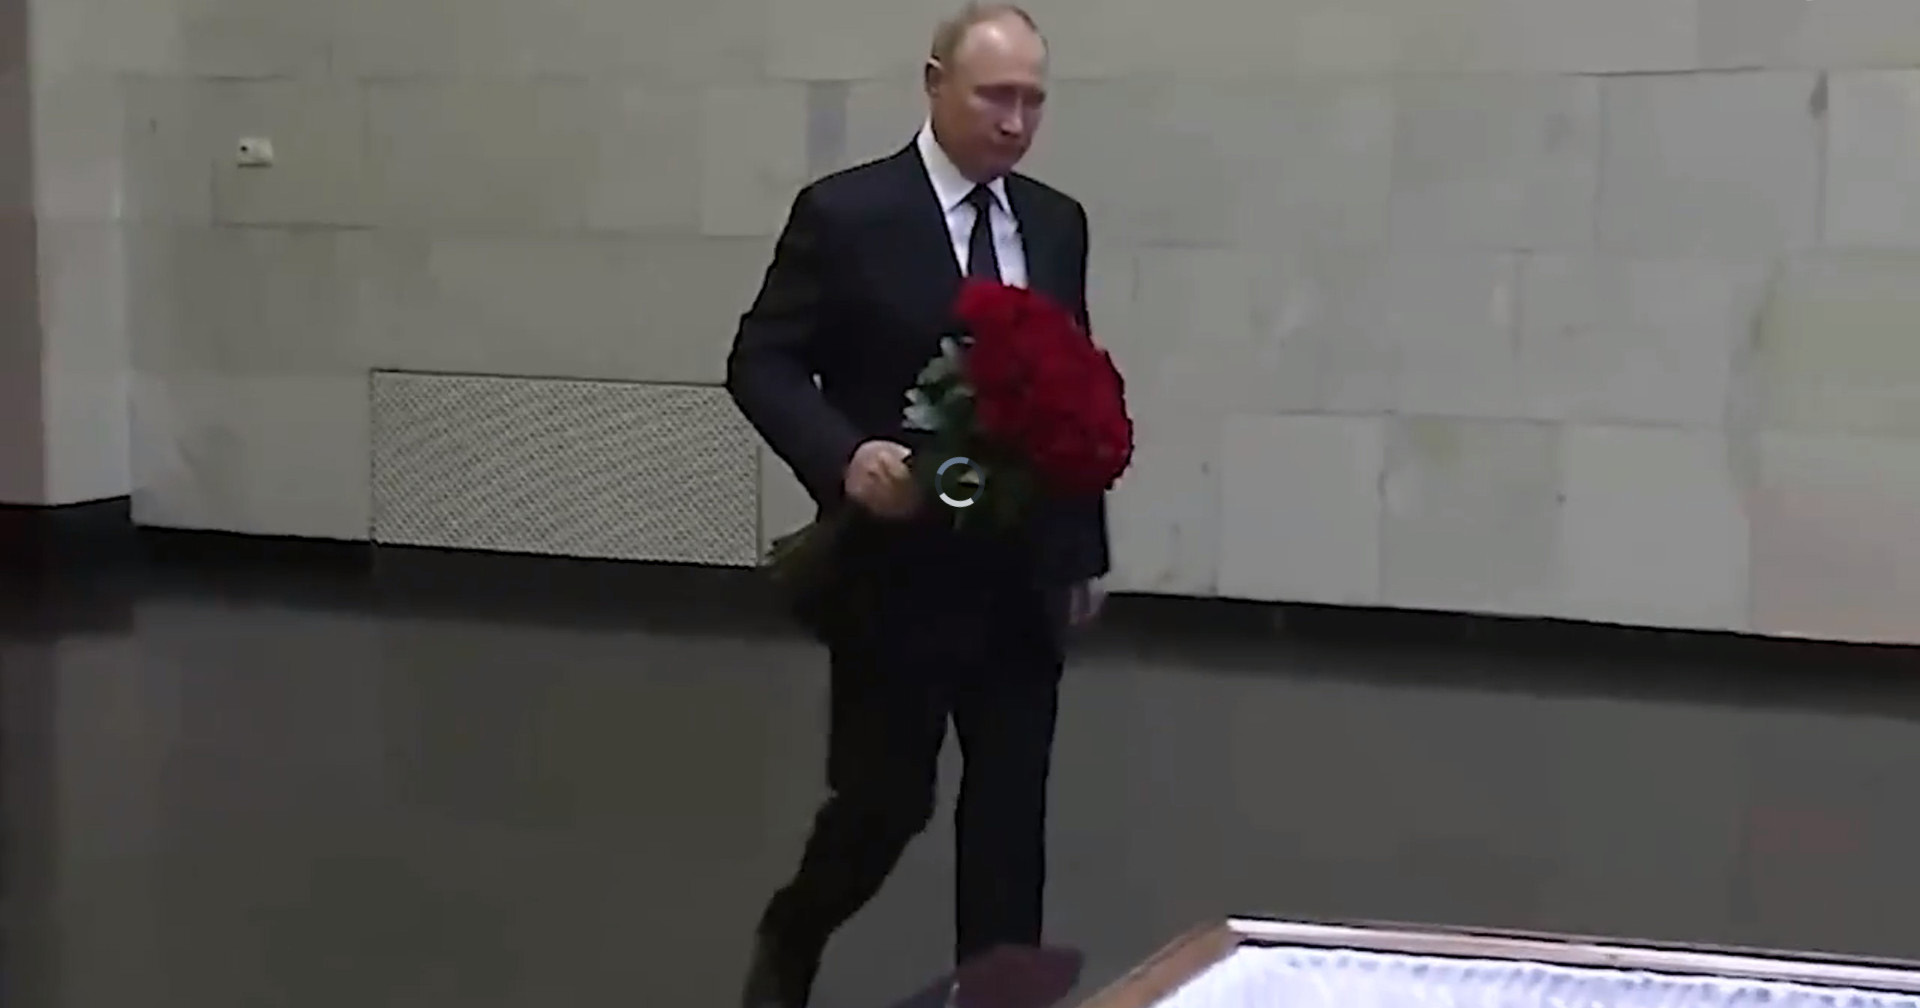 Putin bước đi lúng túng khi đặt hoa trên quan tài của Mikhail Gorbachev sau  khi từ chối dự lễ tang của nhà lãnh đạo Liên Xô cũ - Thời báo